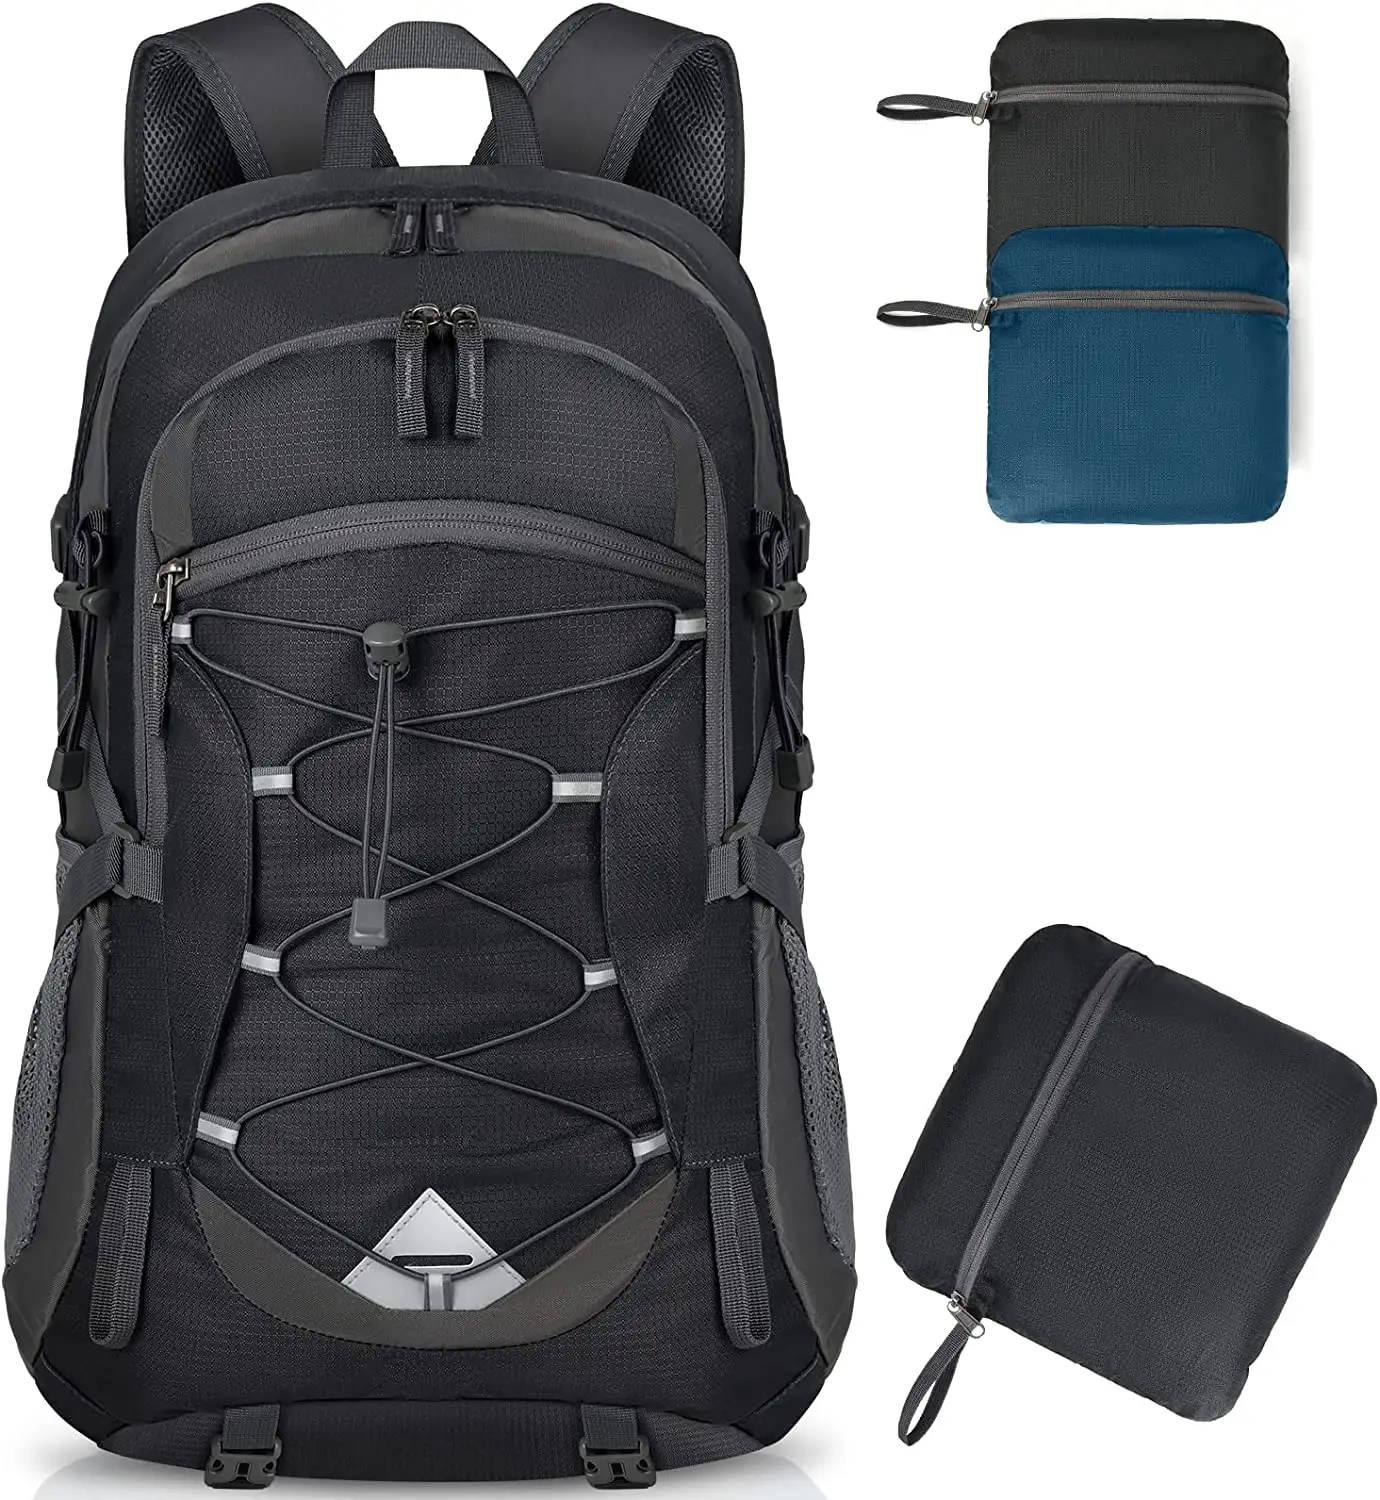 Alta qualidade 40L Packable Lightweight Camping mochila equipamento saco impermeável caminhadas saco